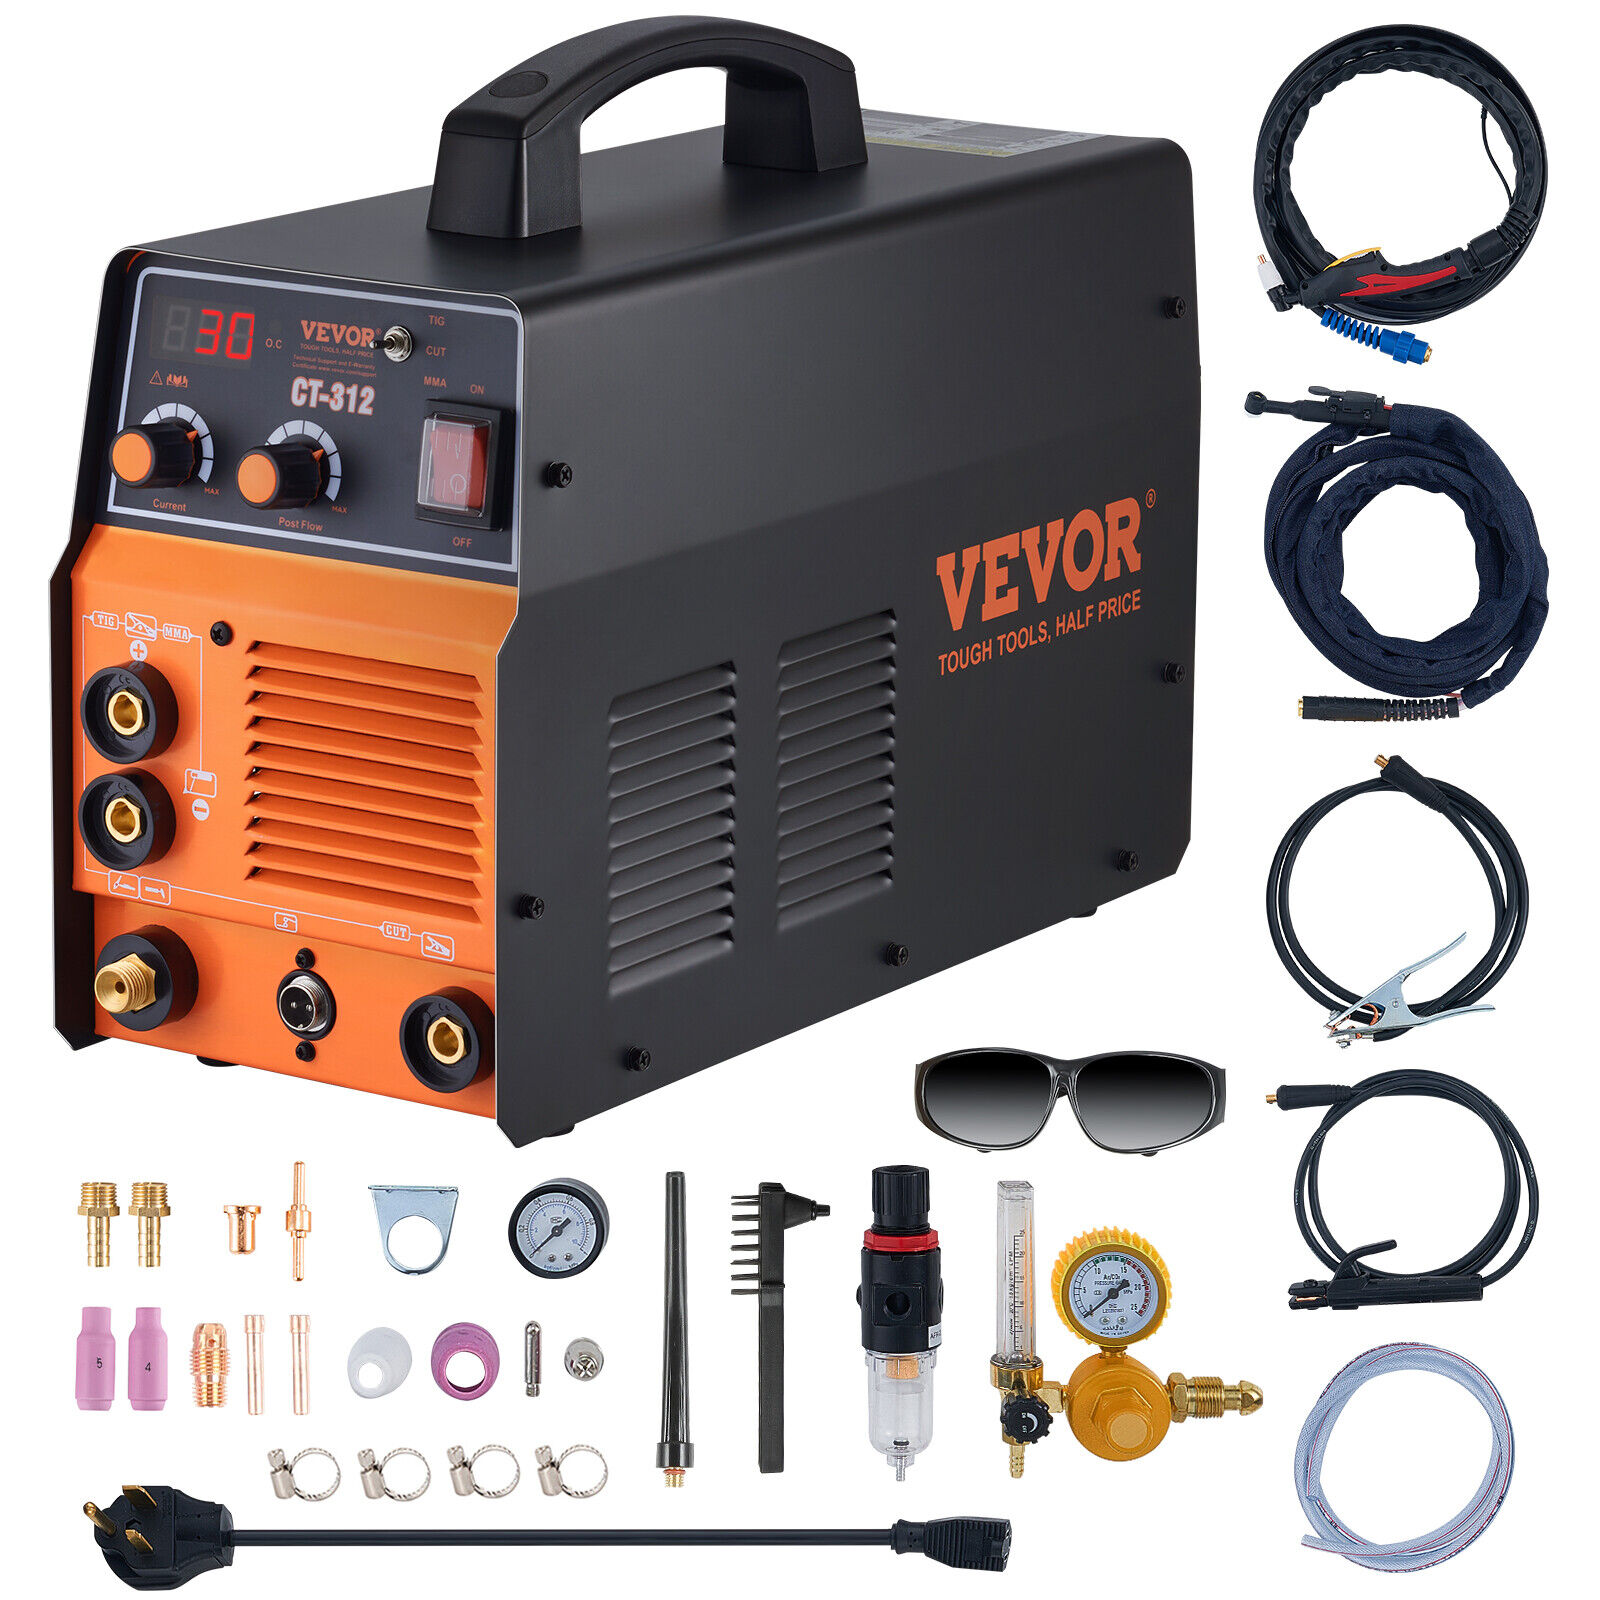 VEVOR 3 in 1 Plasma Cutter Welder Machine CT-312 CUT/TIG/MMA 110/220V Voltage